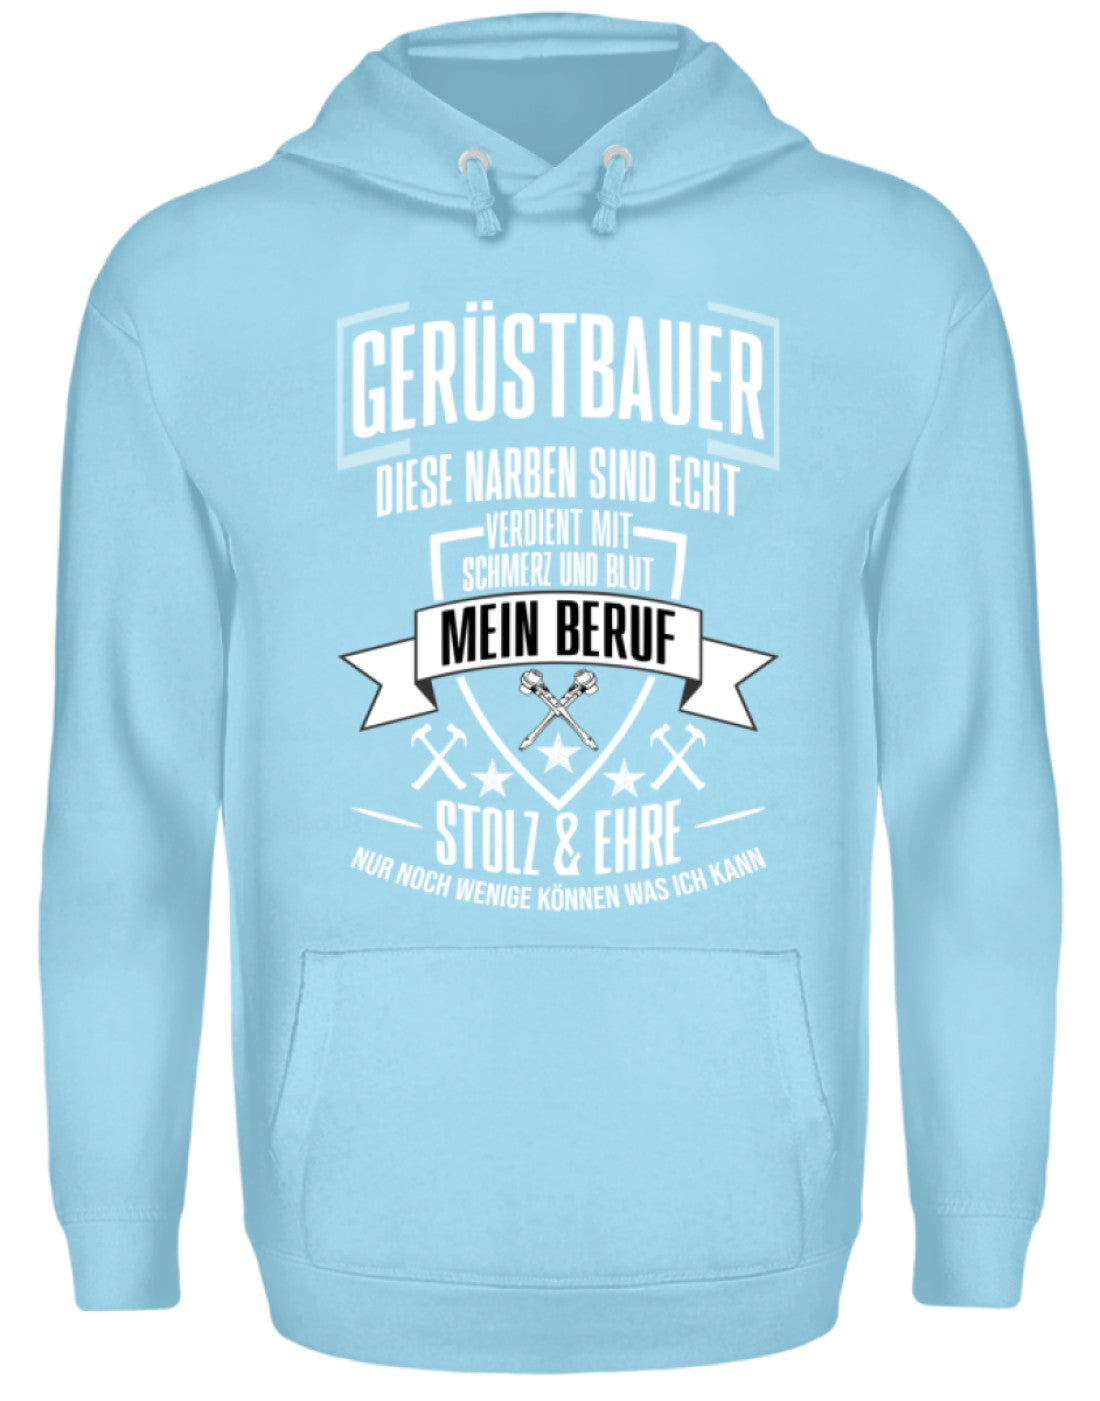 Gerüstbauer / MEIN BERUF €34.95 Gerüstbauer - Shop >>